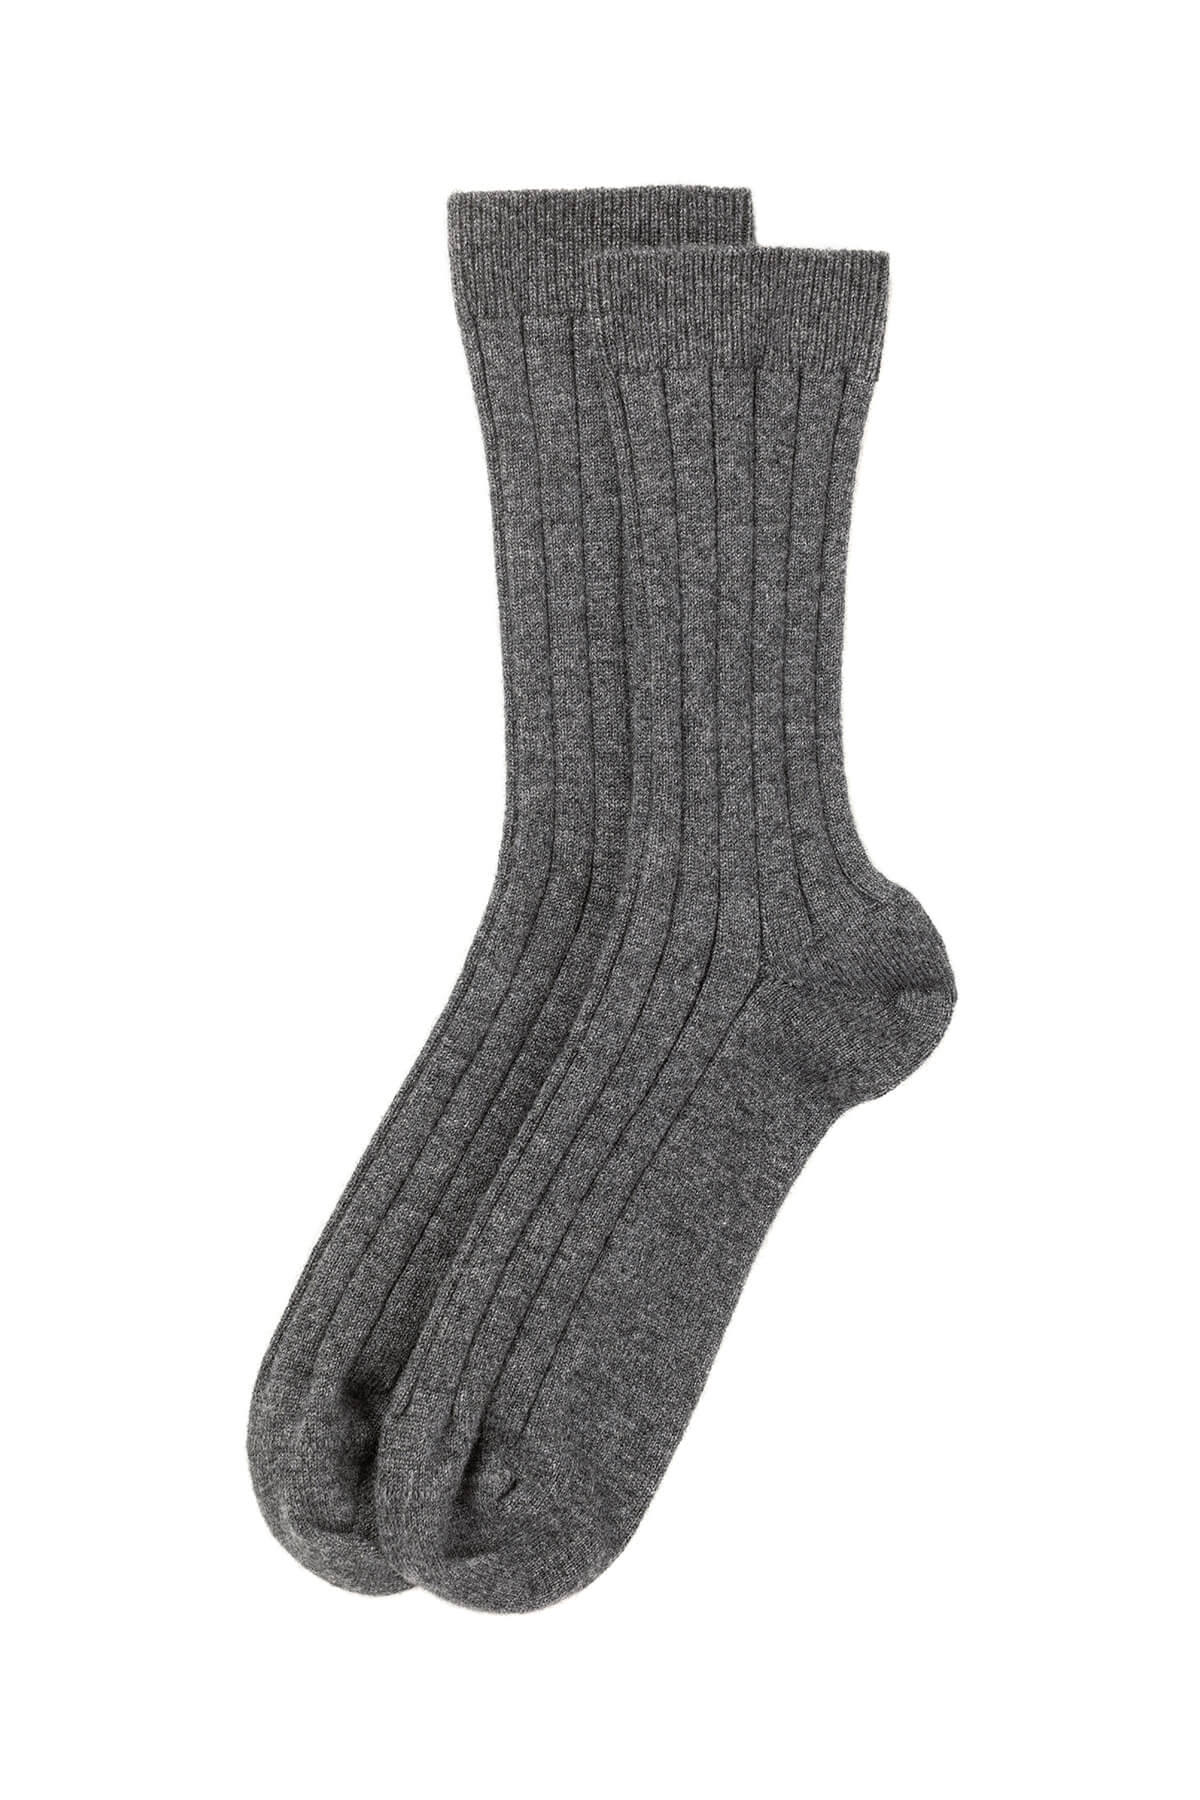 Johnstons of Elgin's Mid Grey Men's Cashmere Socks 365GIFTSET2F